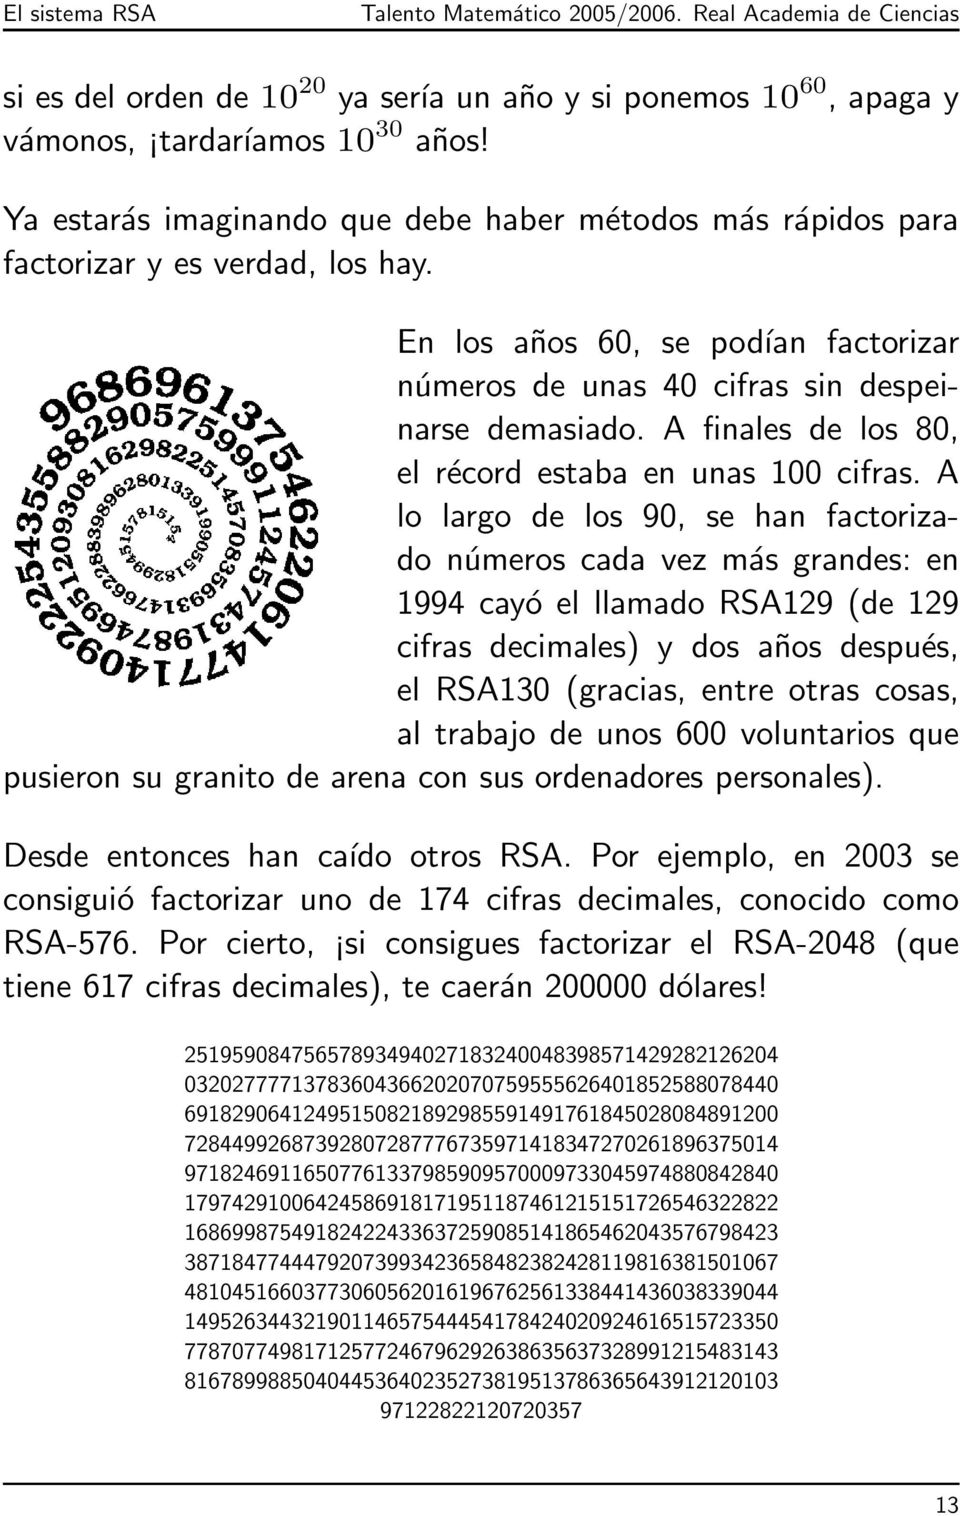 A lo largo de los 90, se han factorizado números cada vez más grandes: en 1994 cayó el llamado RSA129 (de 129 cifras decimales) y dos años después, el RSA130 (gracias, entre otras cosas, al trabajo